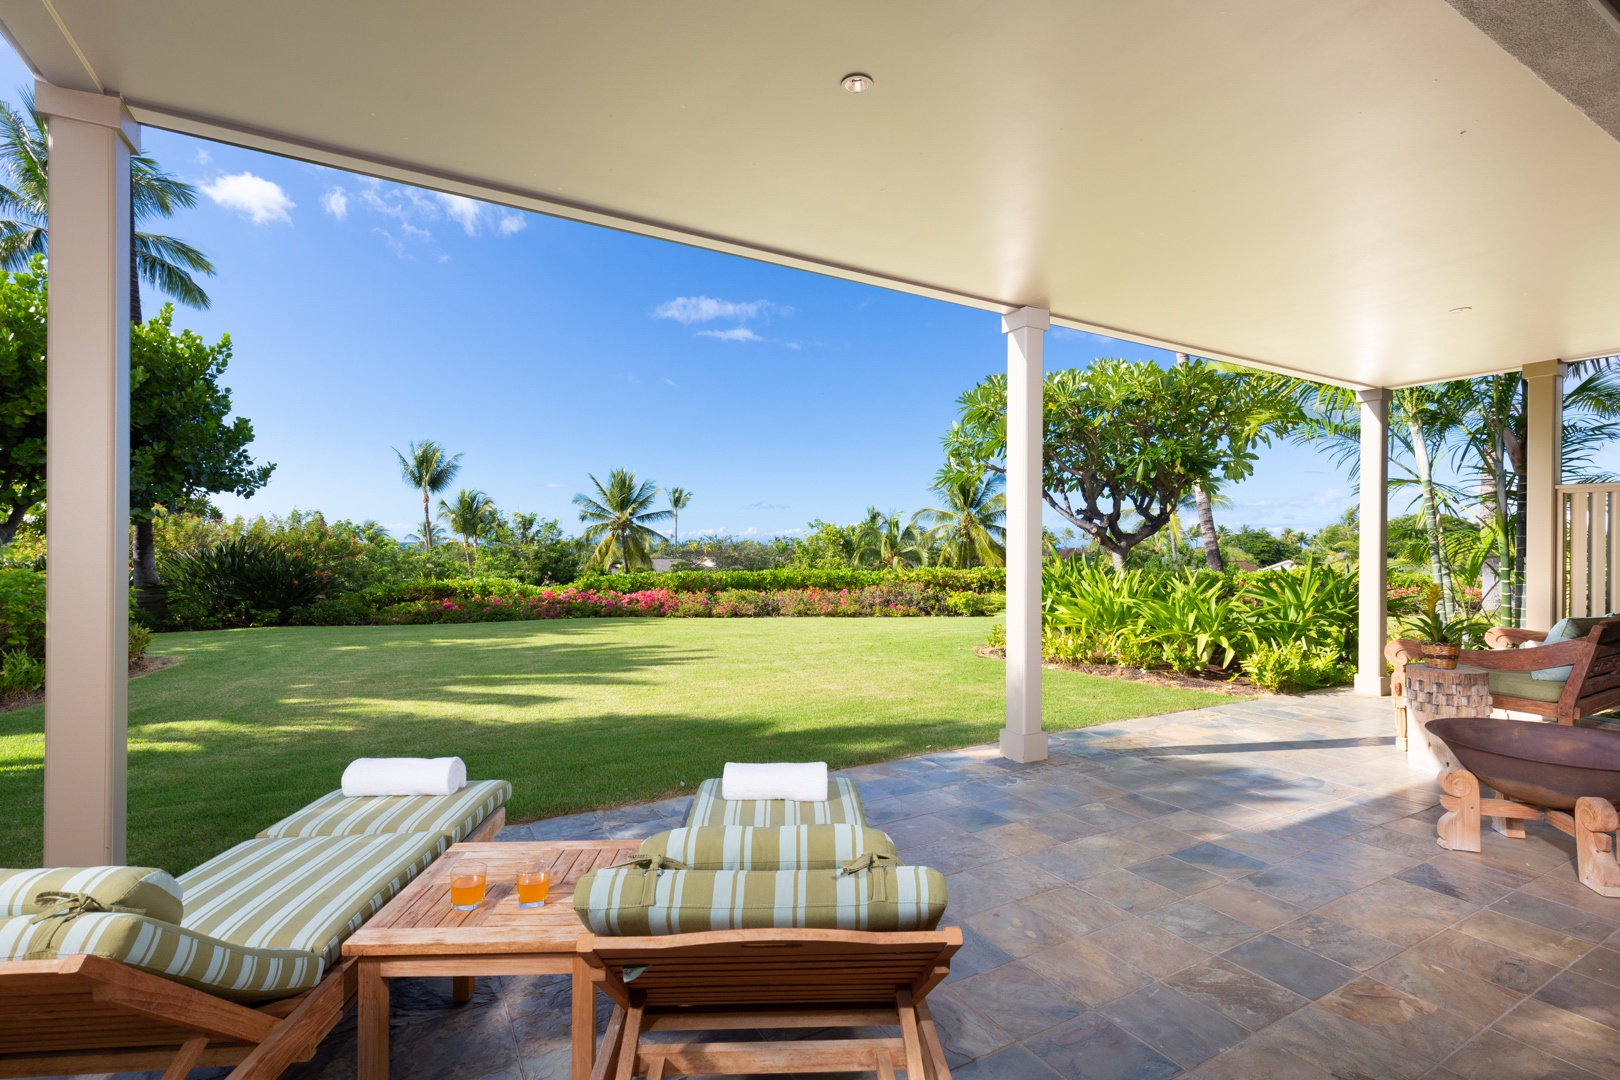 Kailua Kona Vacation Rentals, 3BD Ke Alaula Villa (210A) at Four Seasons Resort at Hualalai - View of the expansive lawn from the lower lanai loungers.